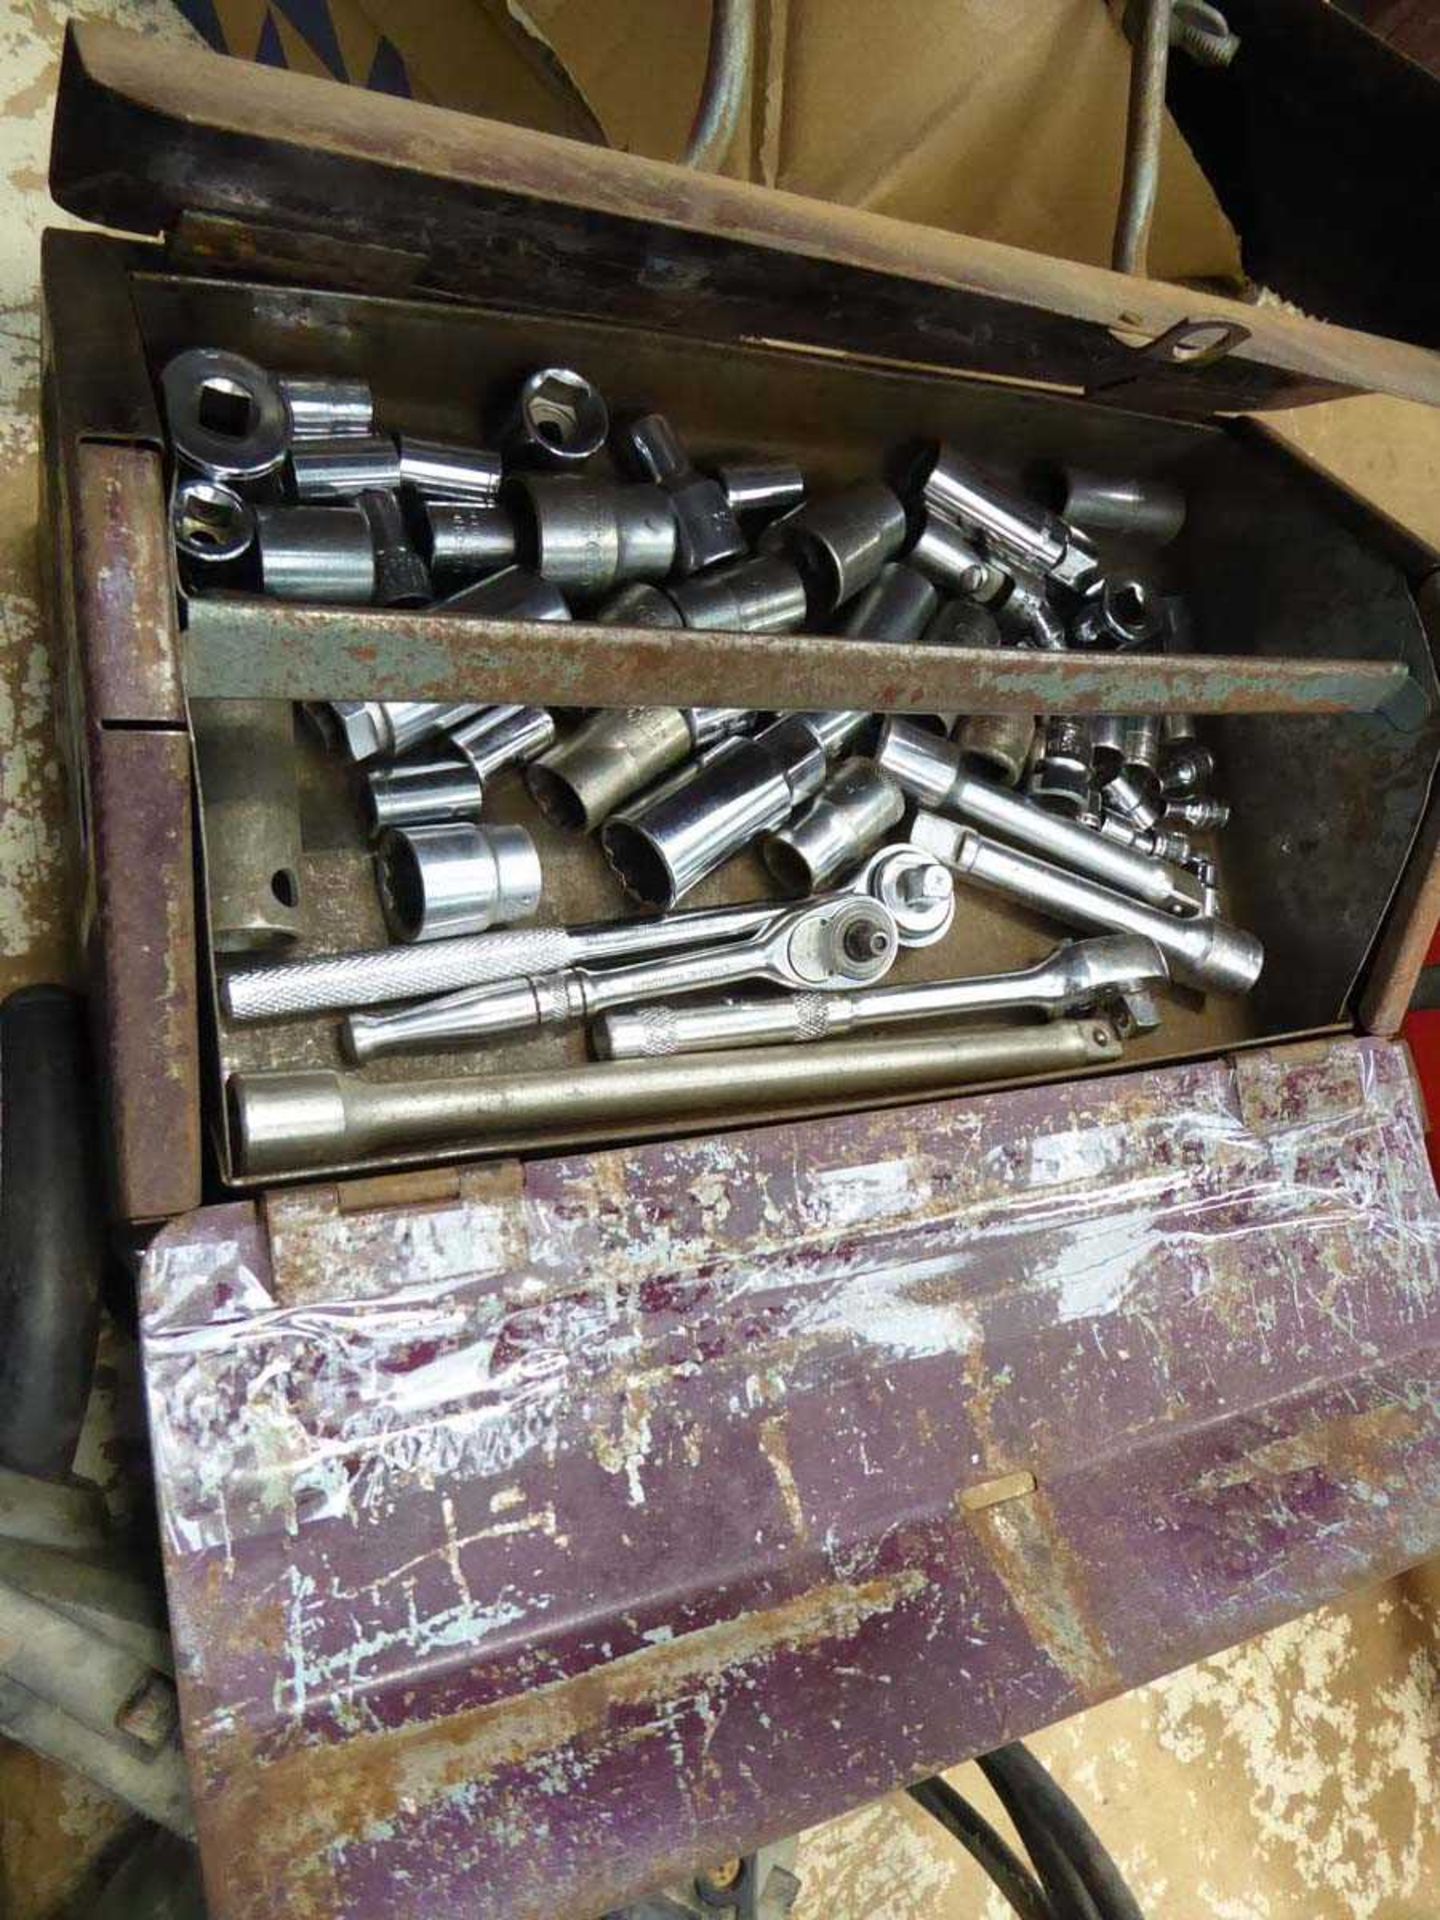 Small toolbox of various sockets